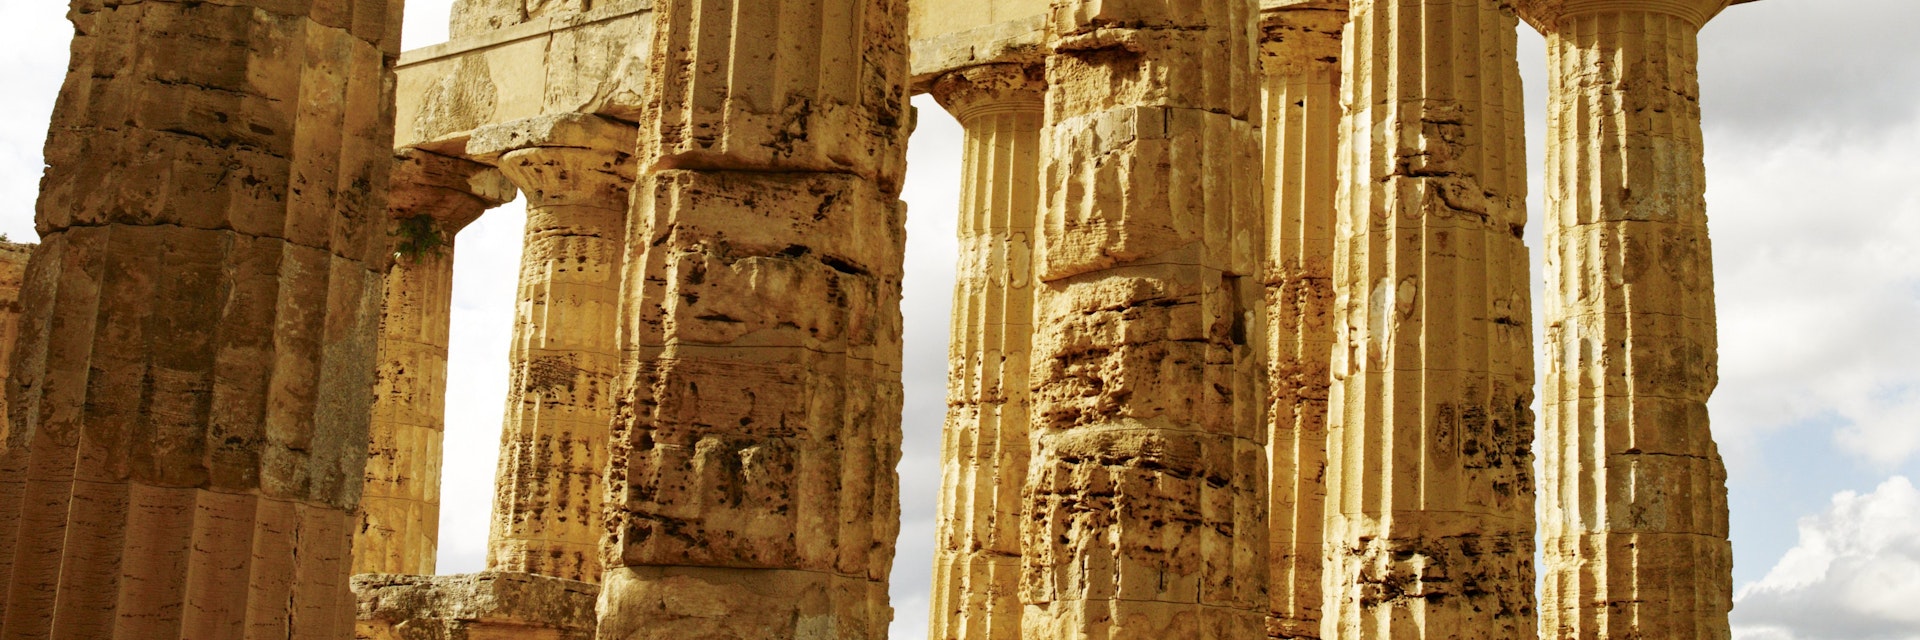 'Temple of Hera' Greek ruin.